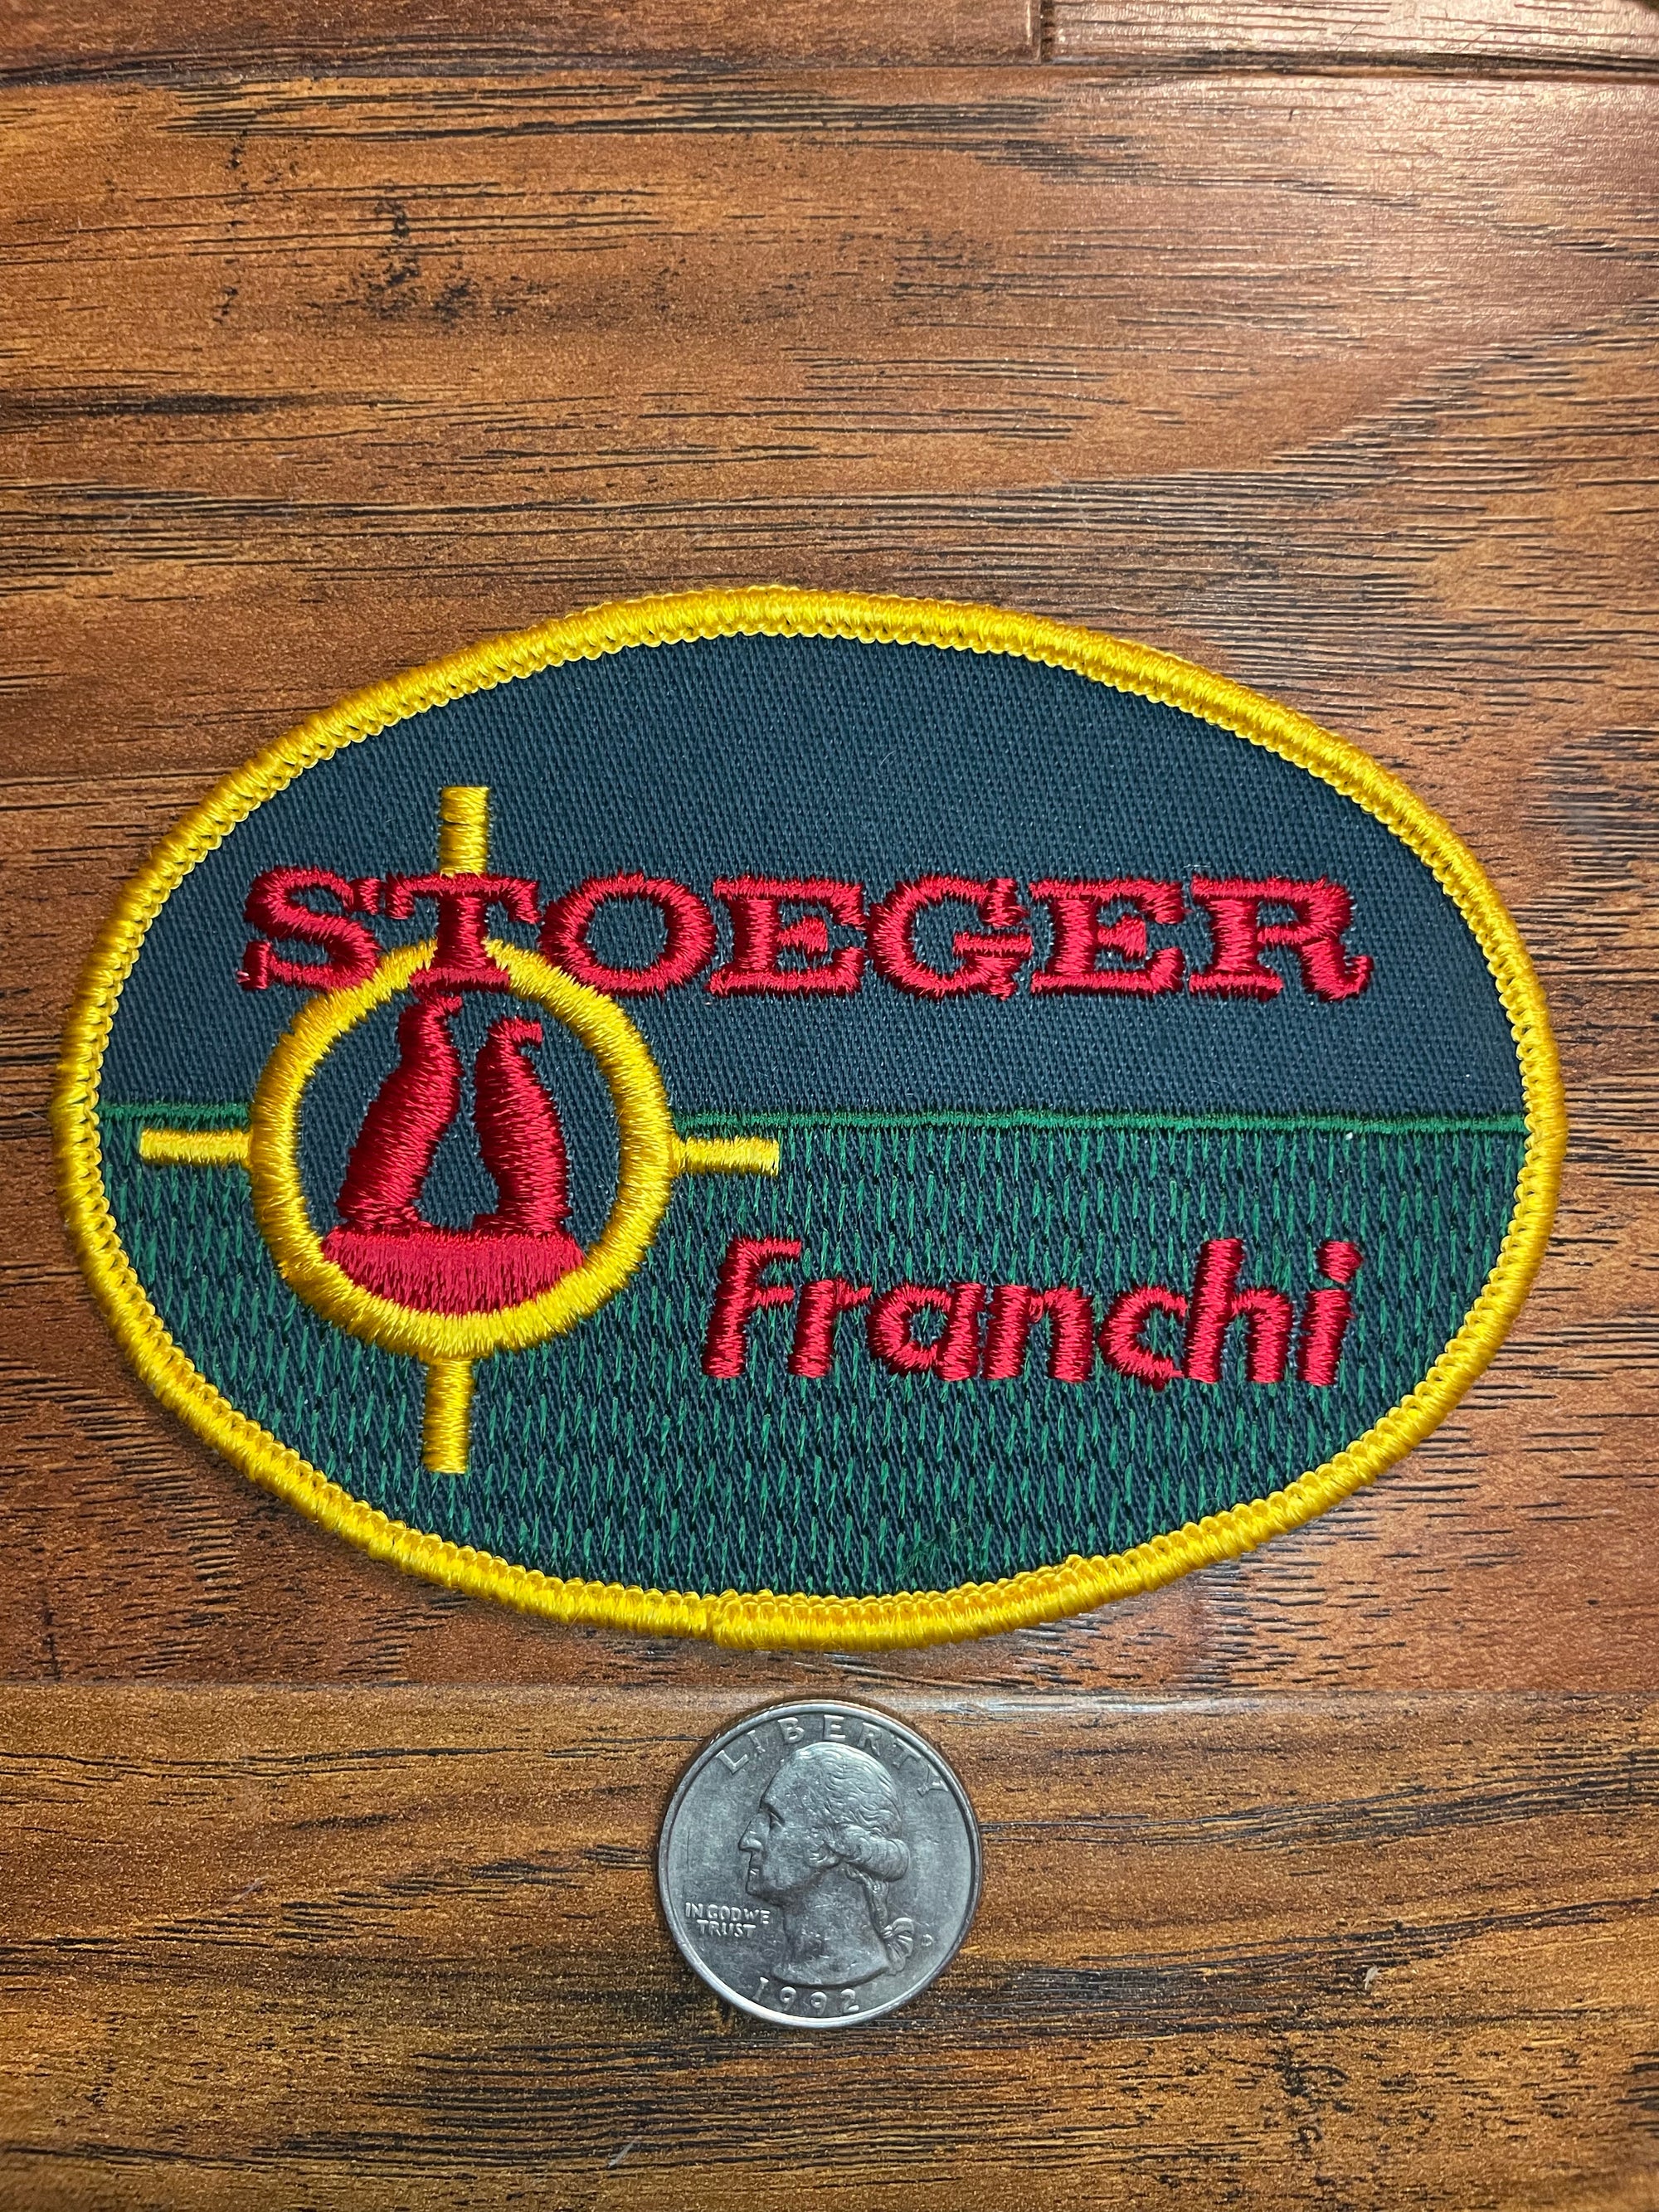 Vintage Stoeger Franchi